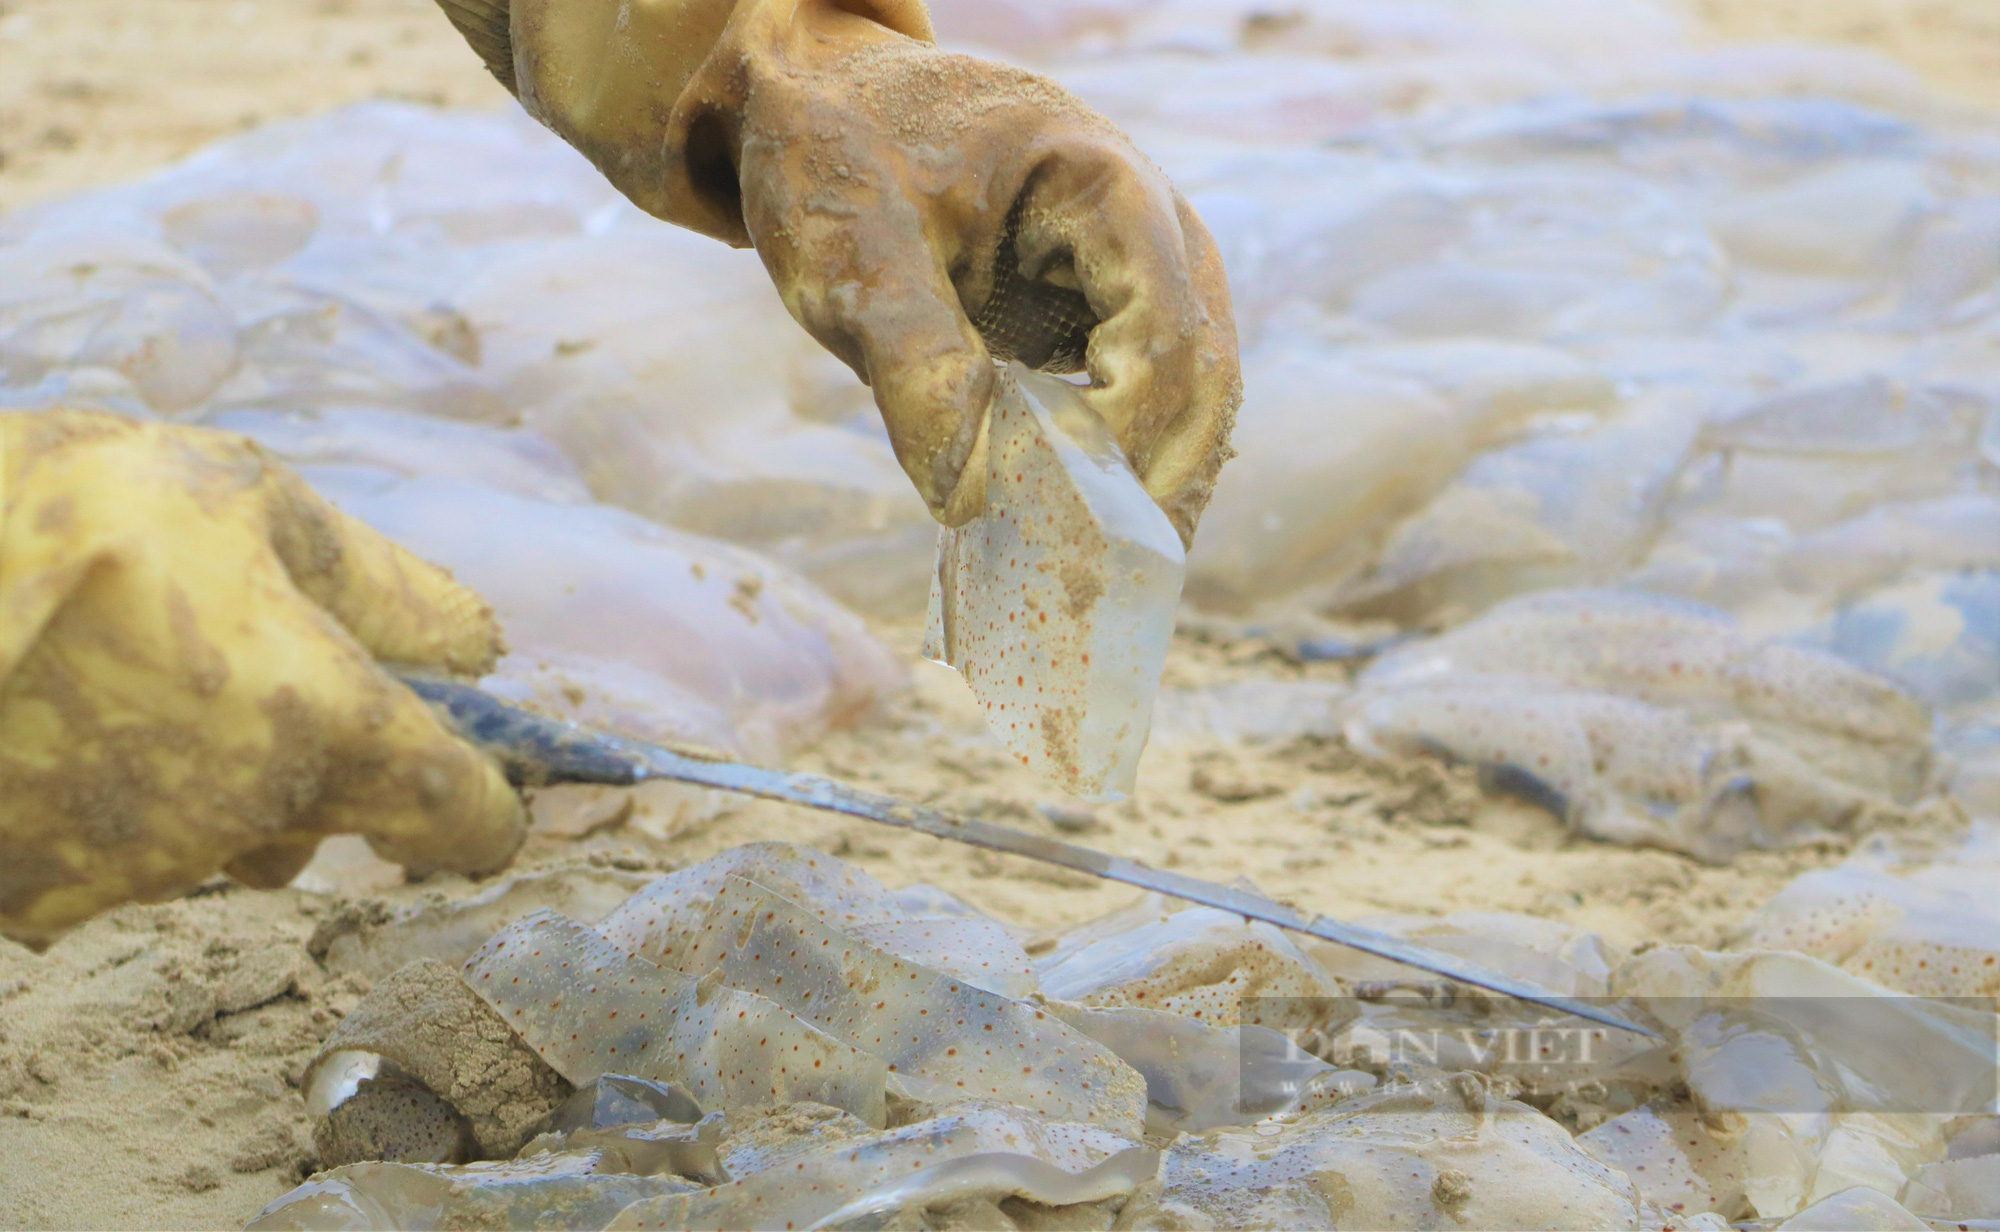 Ngư dân Hà Tĩnh vào mùa thu hoạch sứa biển, bỏ túi hàng triệu đồng mỗi ngày - Ảnh 10.